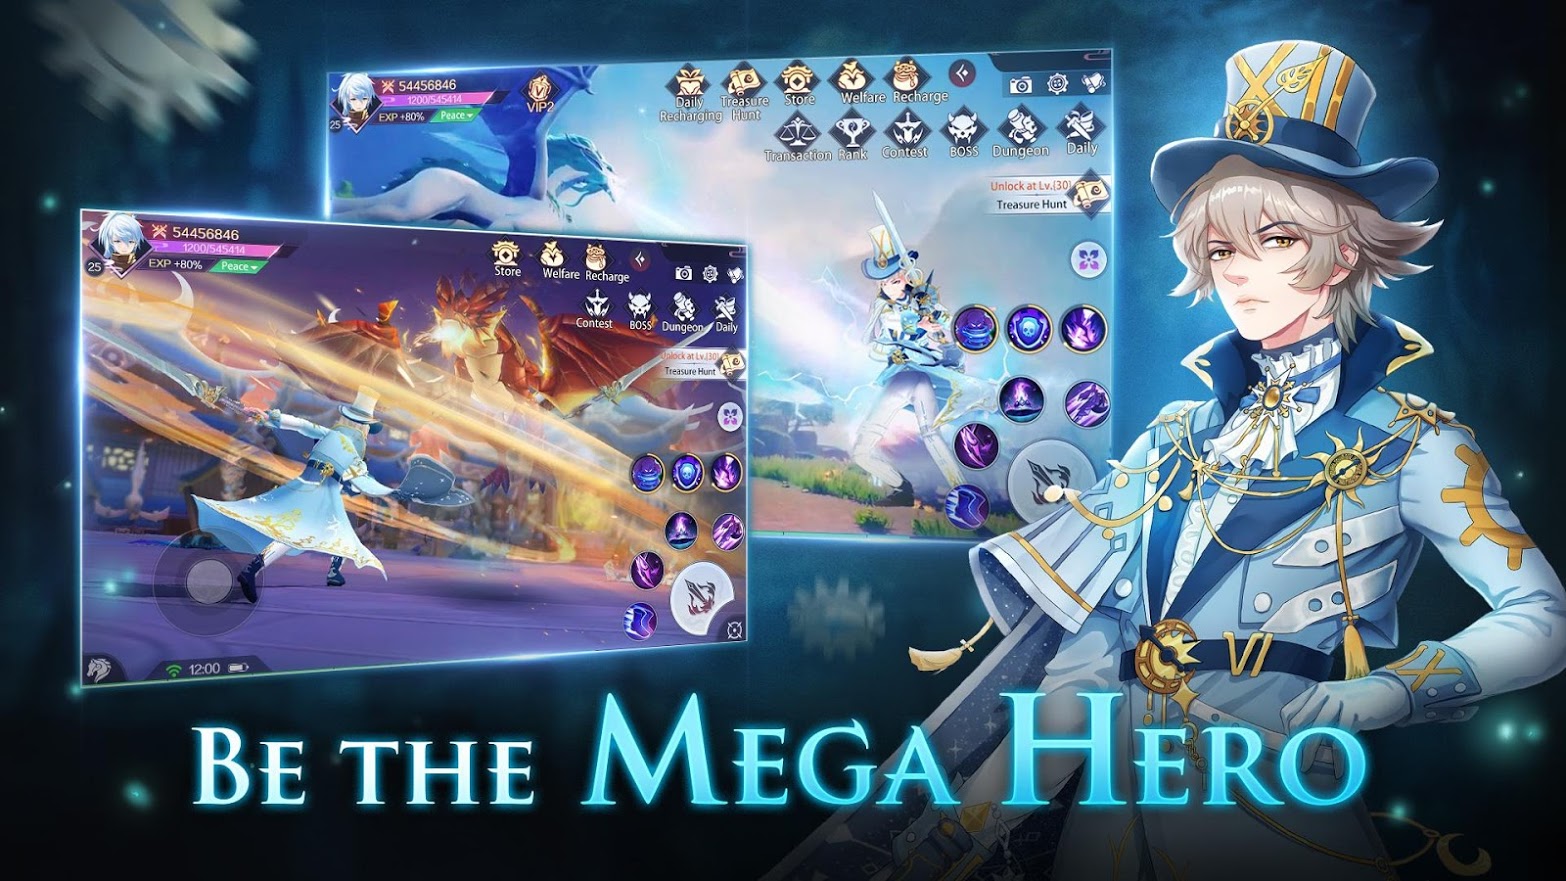 Mega Heroes release